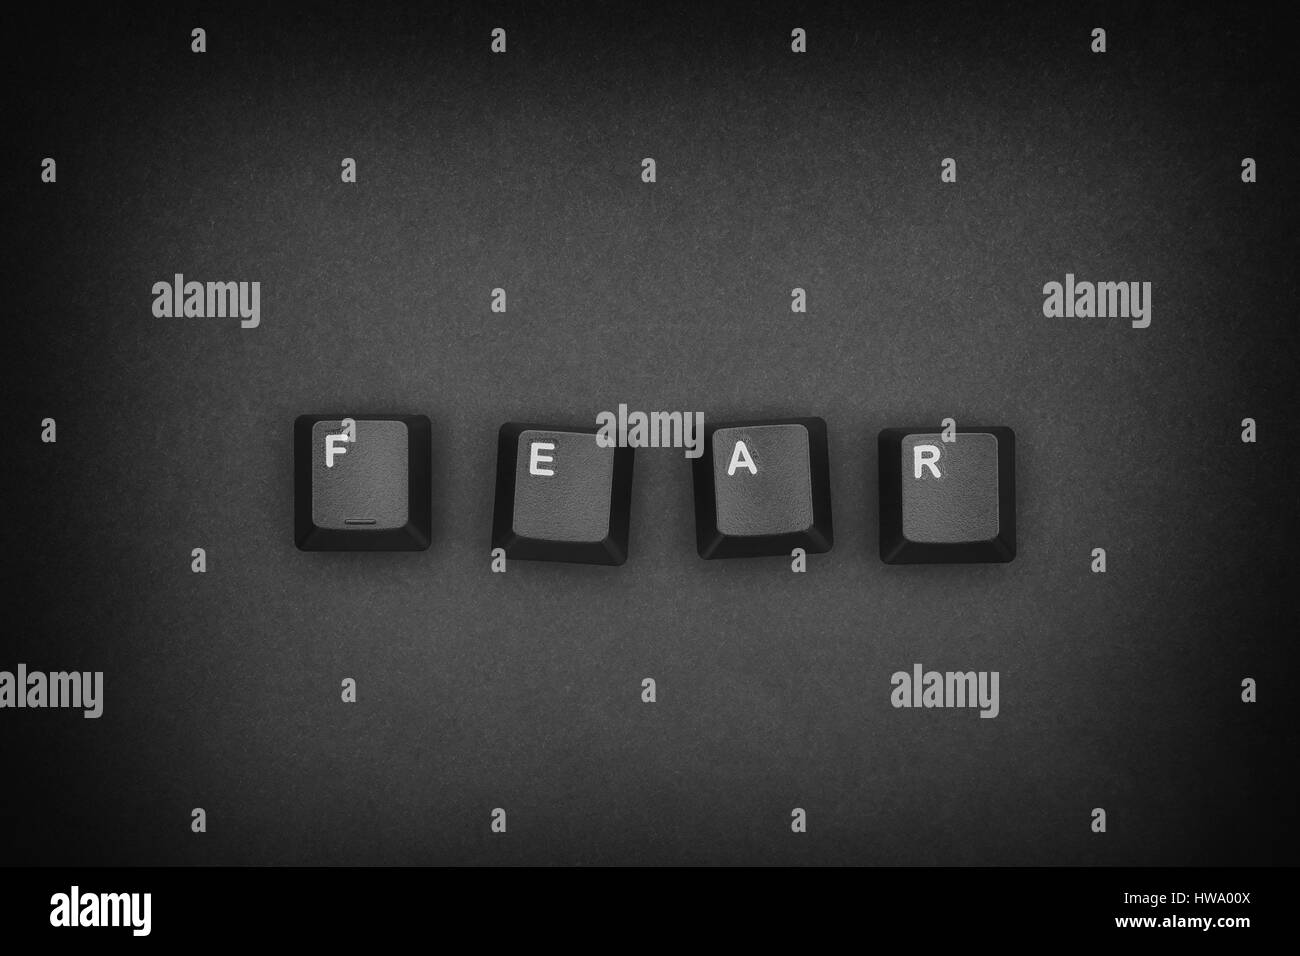 Wort "Angst" mit Computer-Tastatur-Tasten geschrieben. Konzept-Bild. Stockfoto